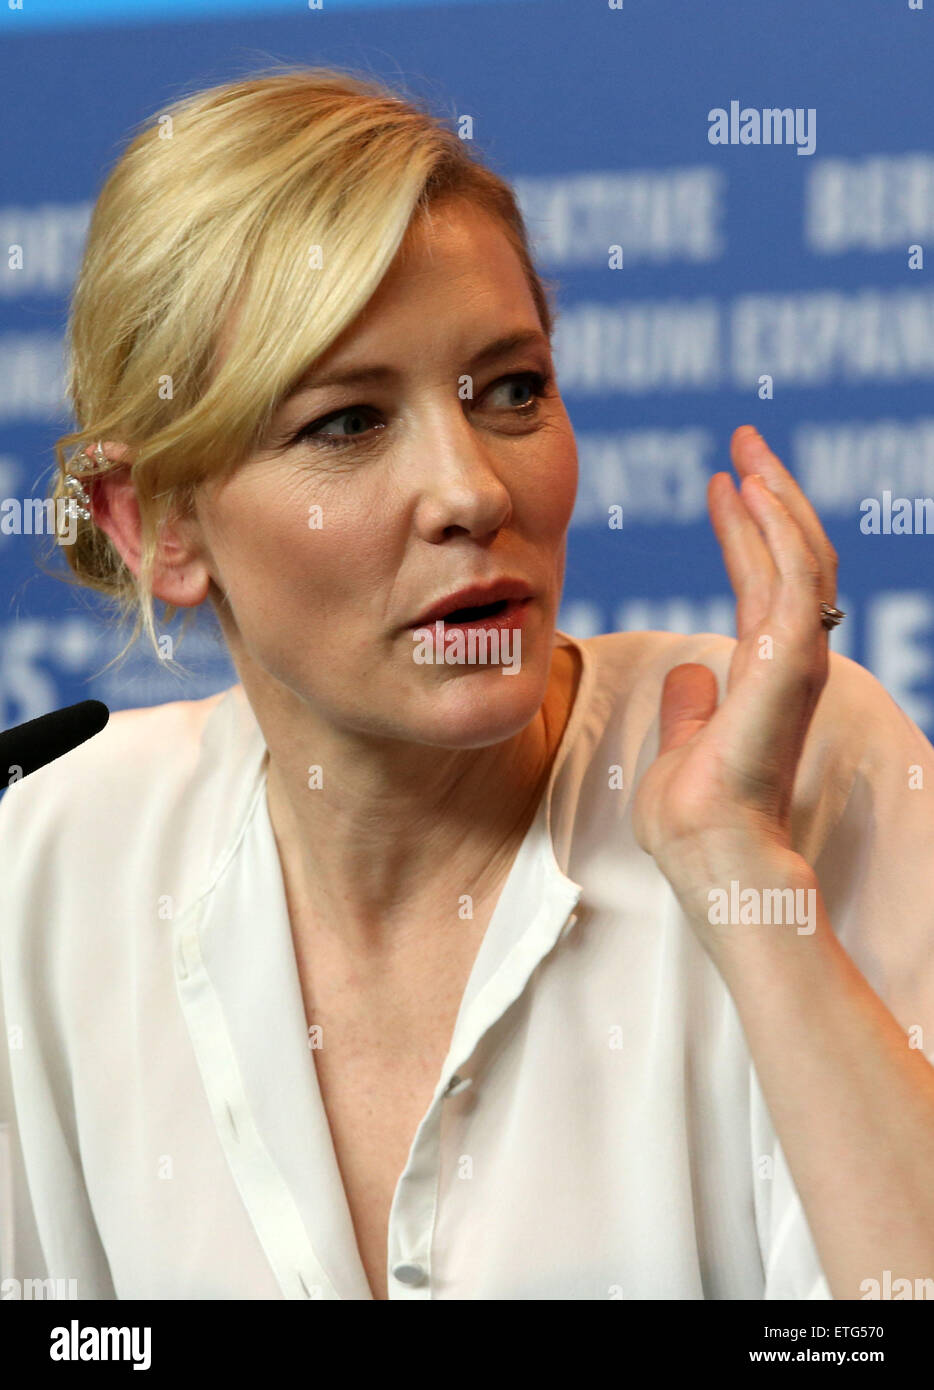 65e Festival International du Film de Berlin - 'Cinderella' - conférence de presse : Cate Blanchett Où : Berlin, Allemagne Quand : 13 février 2015 Source : WENN.com Banque D'Images